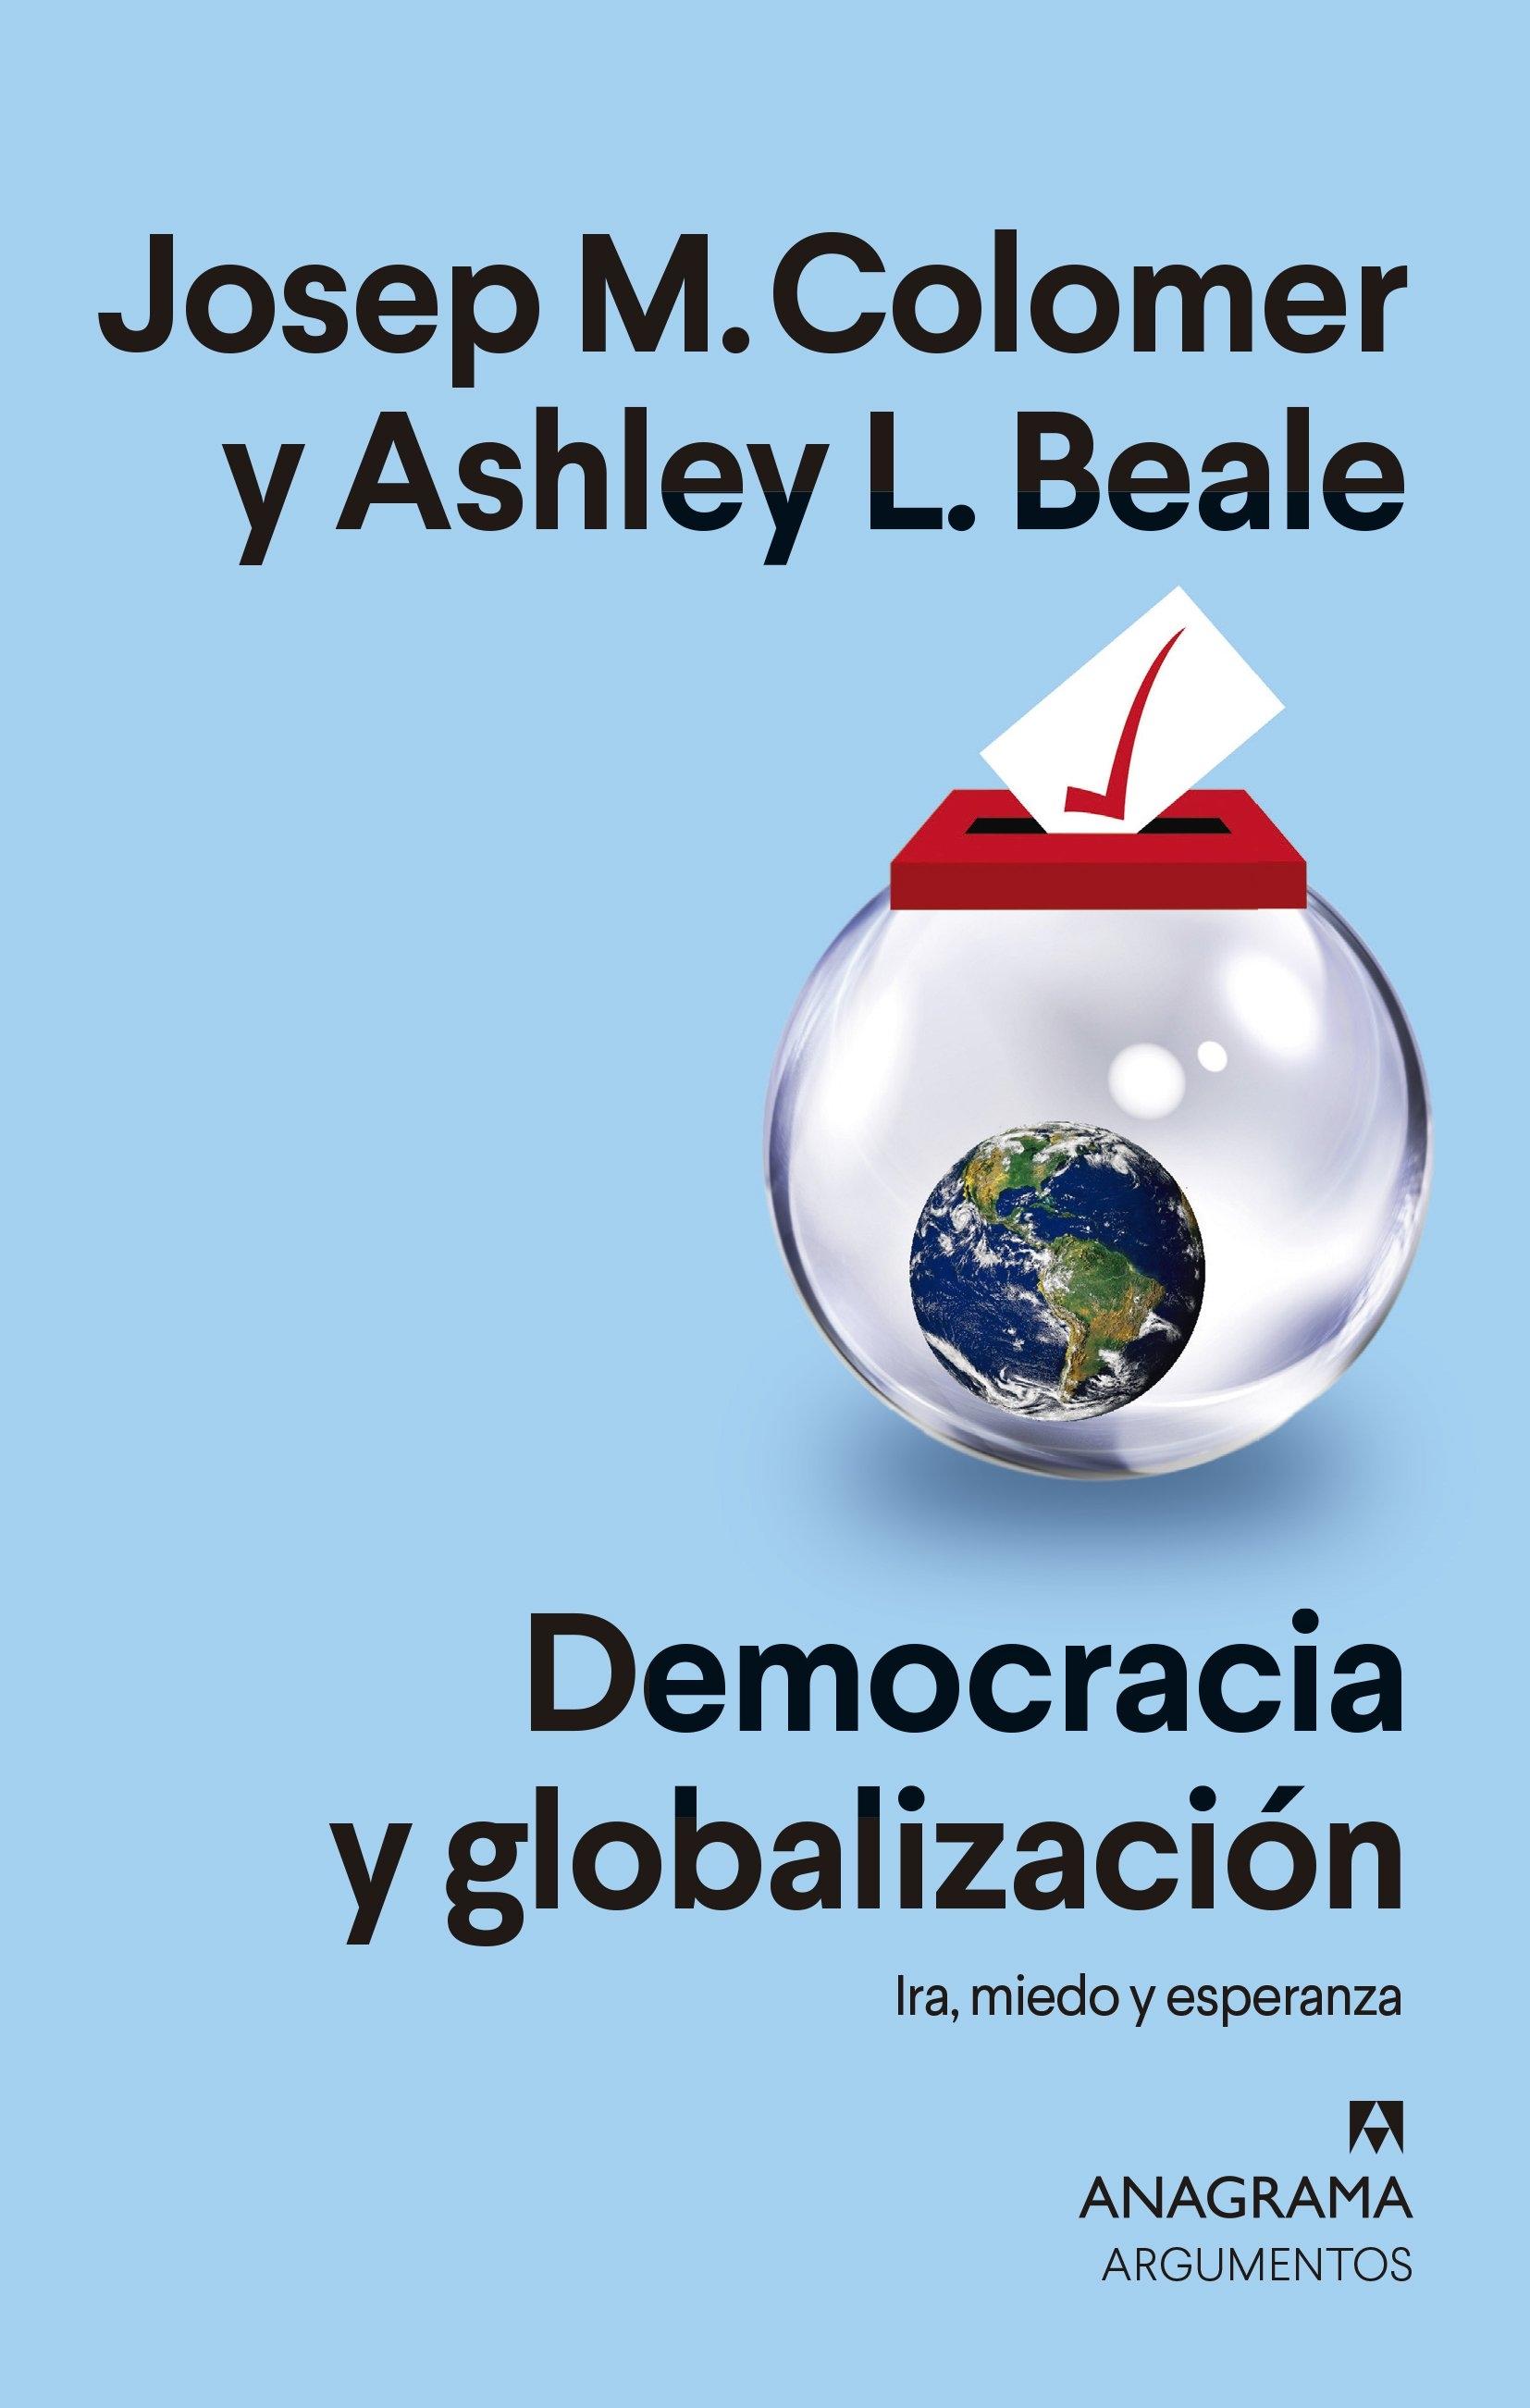 Democracia y globalización "Ira, miedo y esperanza"